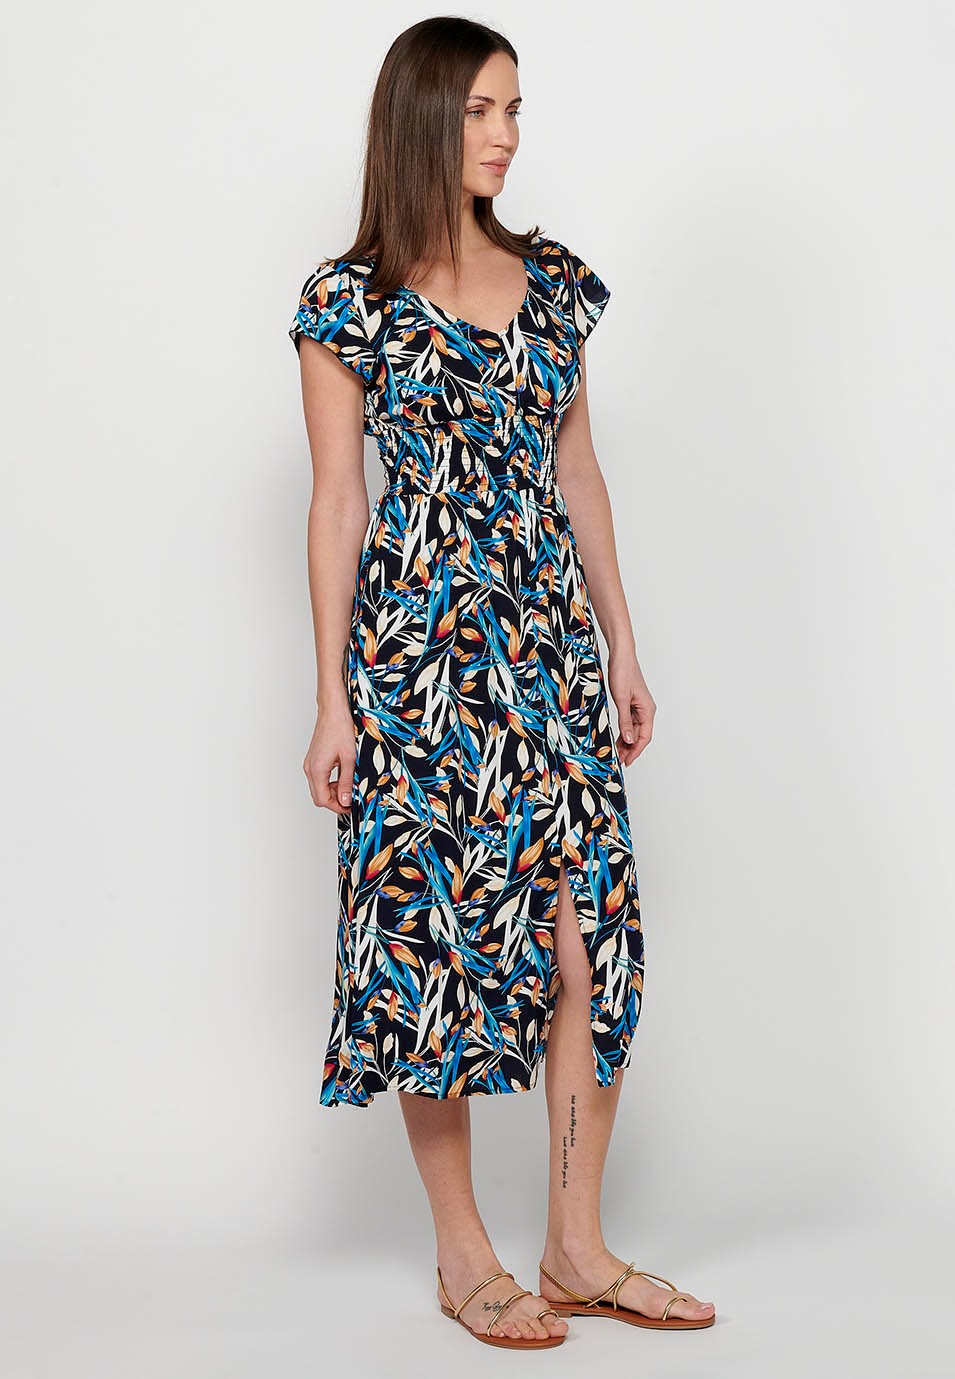 Damen-Kleid mit mehrfarbigem Blumendruck, V-Ausschnitt, kurzen Ärmeln und Schlitz vorne 4